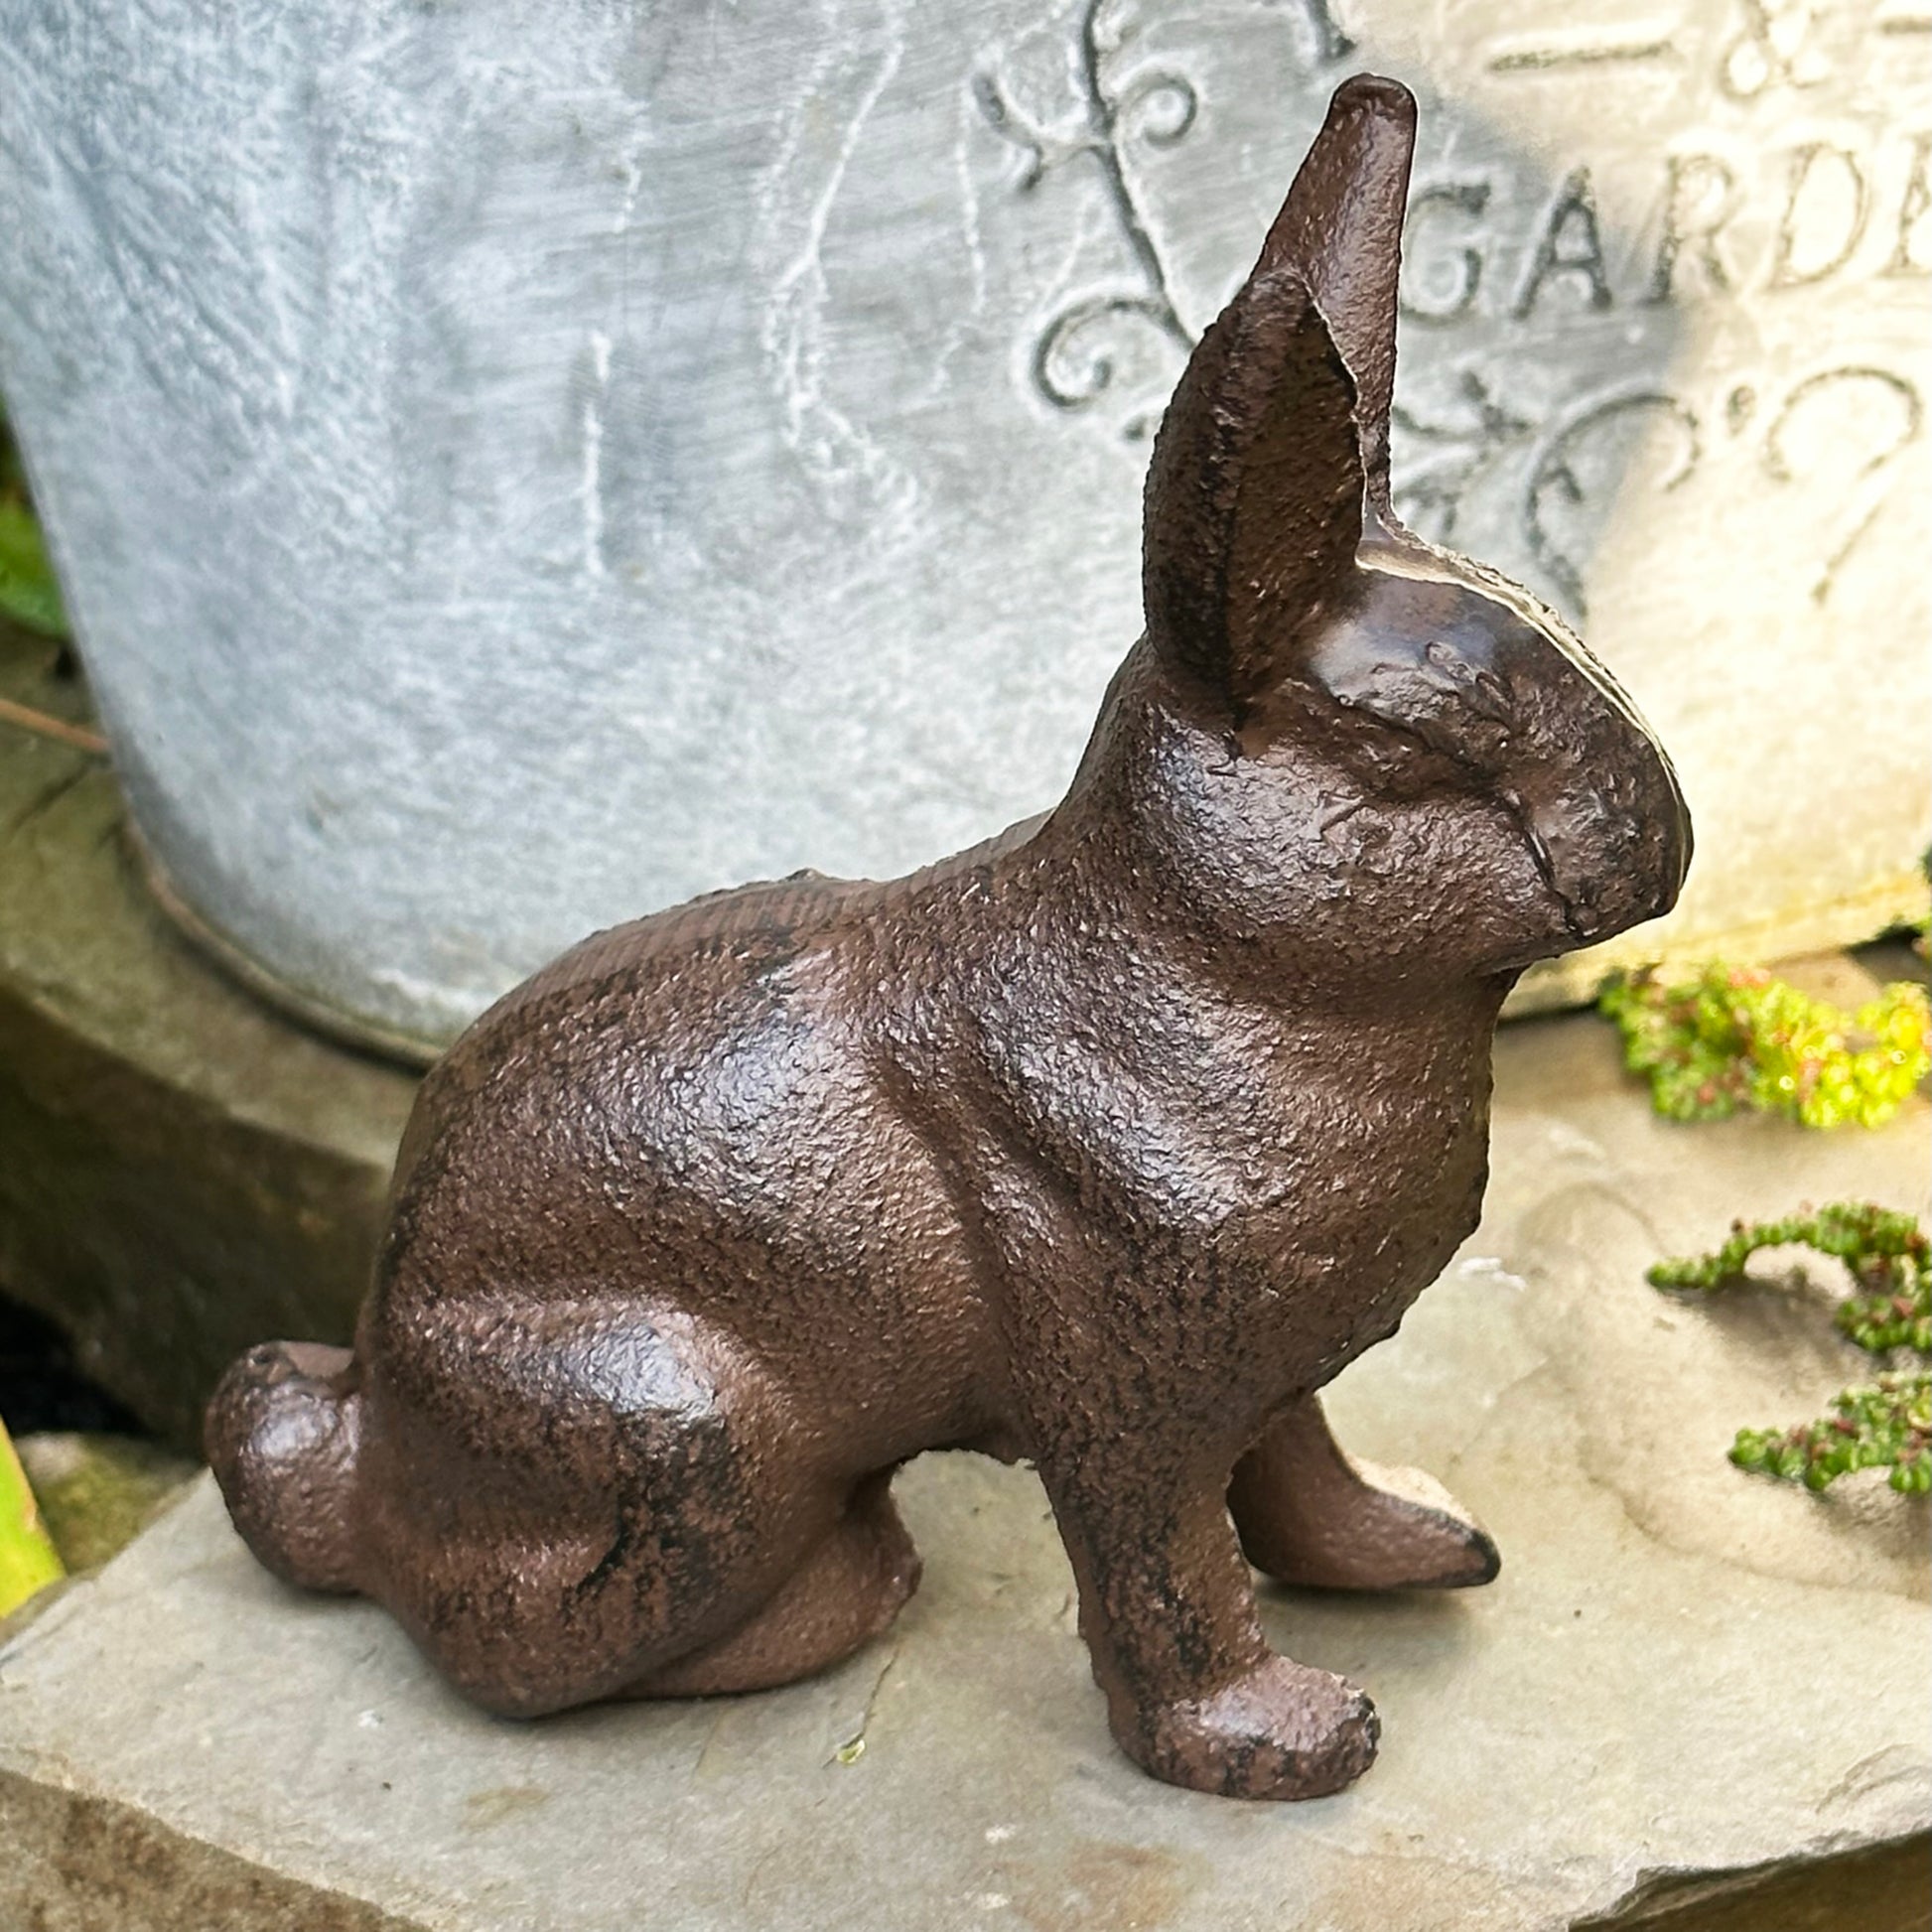 Darthome Miniature Cast Iron Rabbit Figurine – Darthome Limited